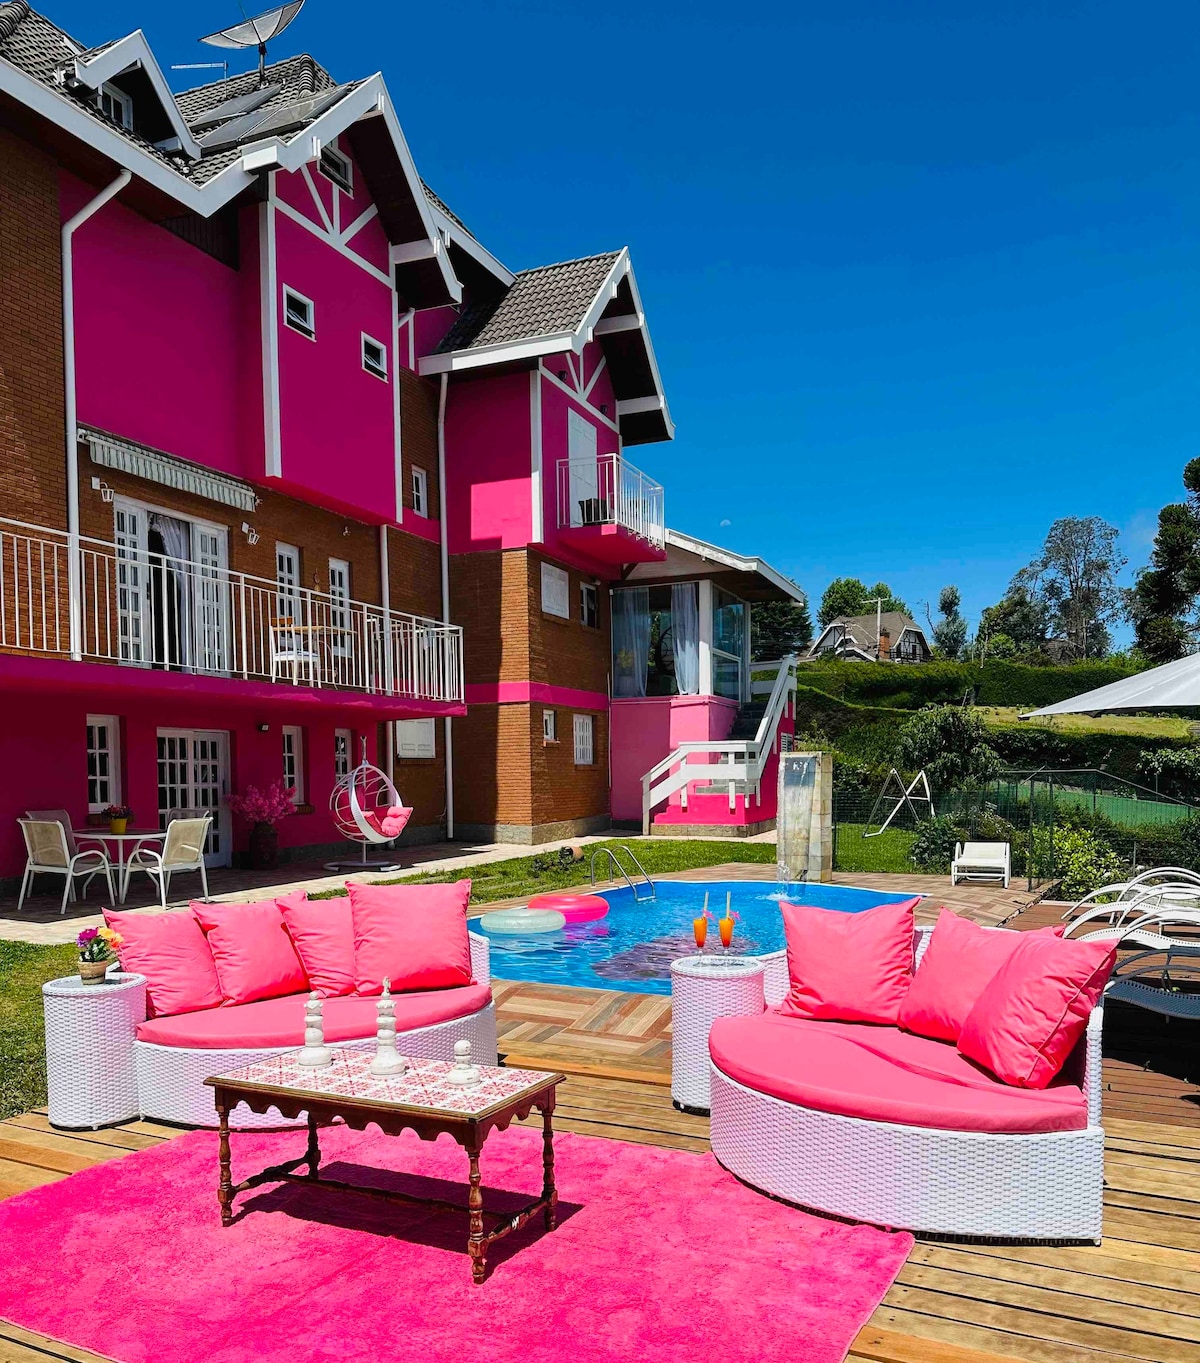 Casa Pink Village